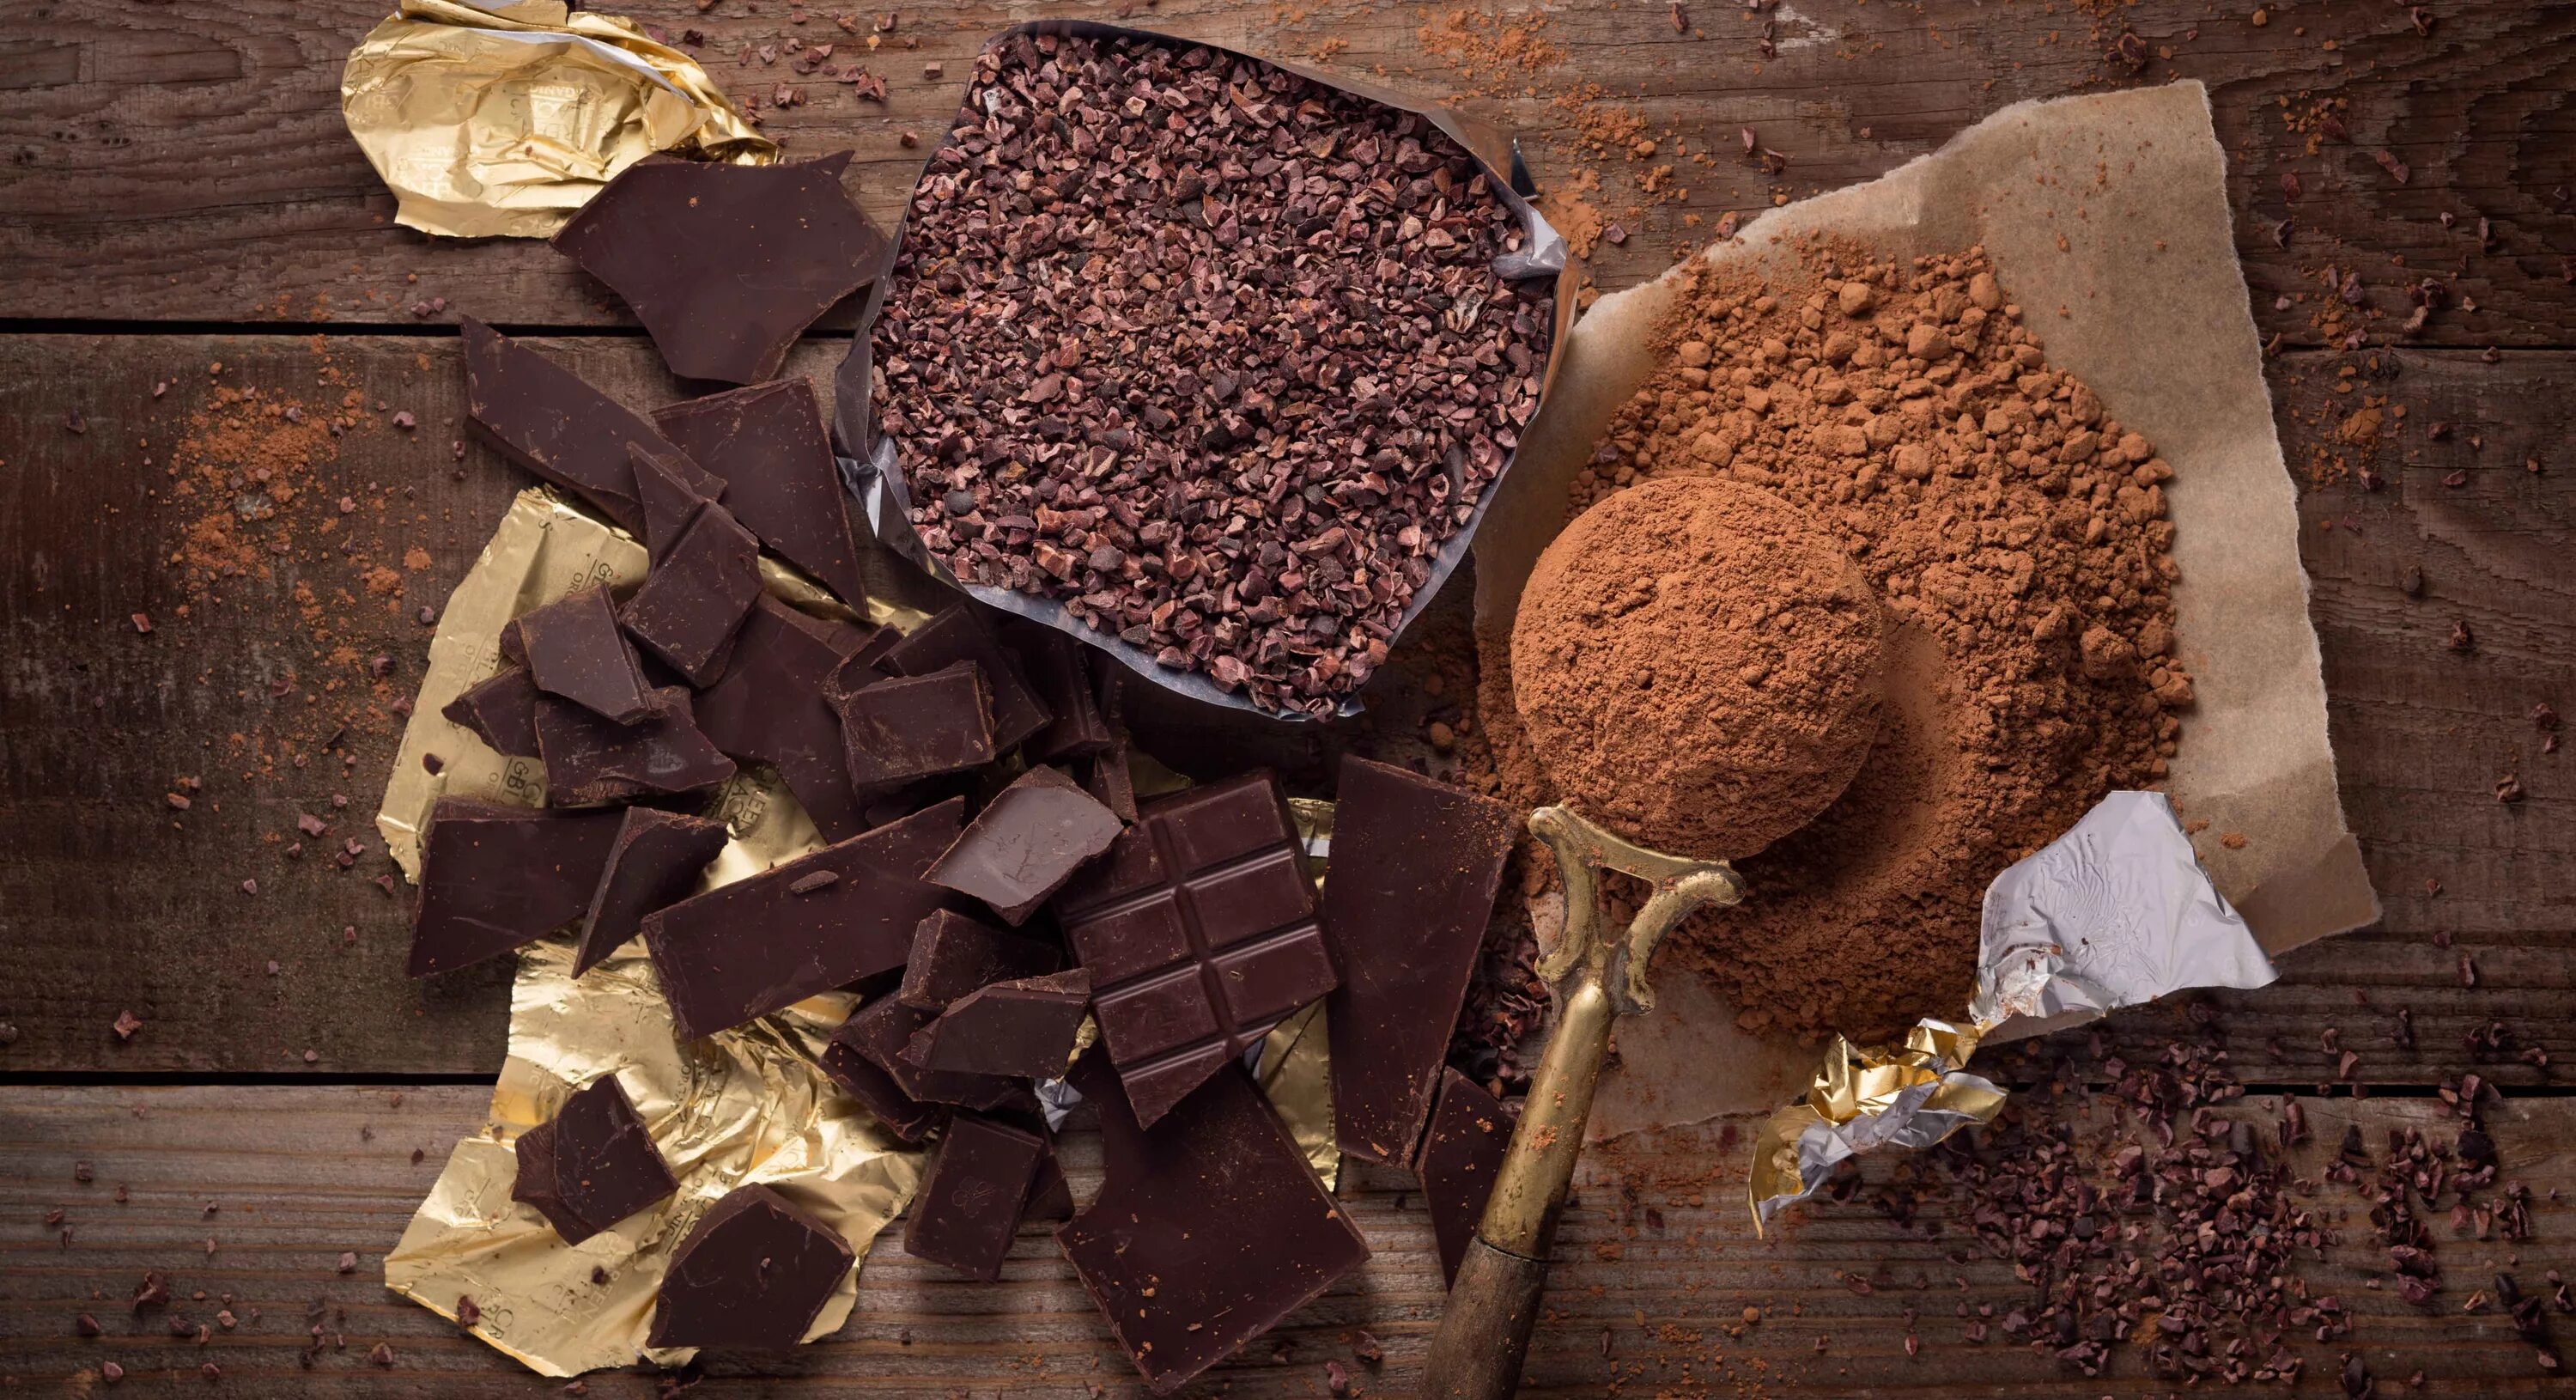 Изготовление домашнего шоколада. Ингредиенты для шоколада на производстве. Сырье для шоколада. Конфеты из какао порошка. Сырье для производства шоколада.